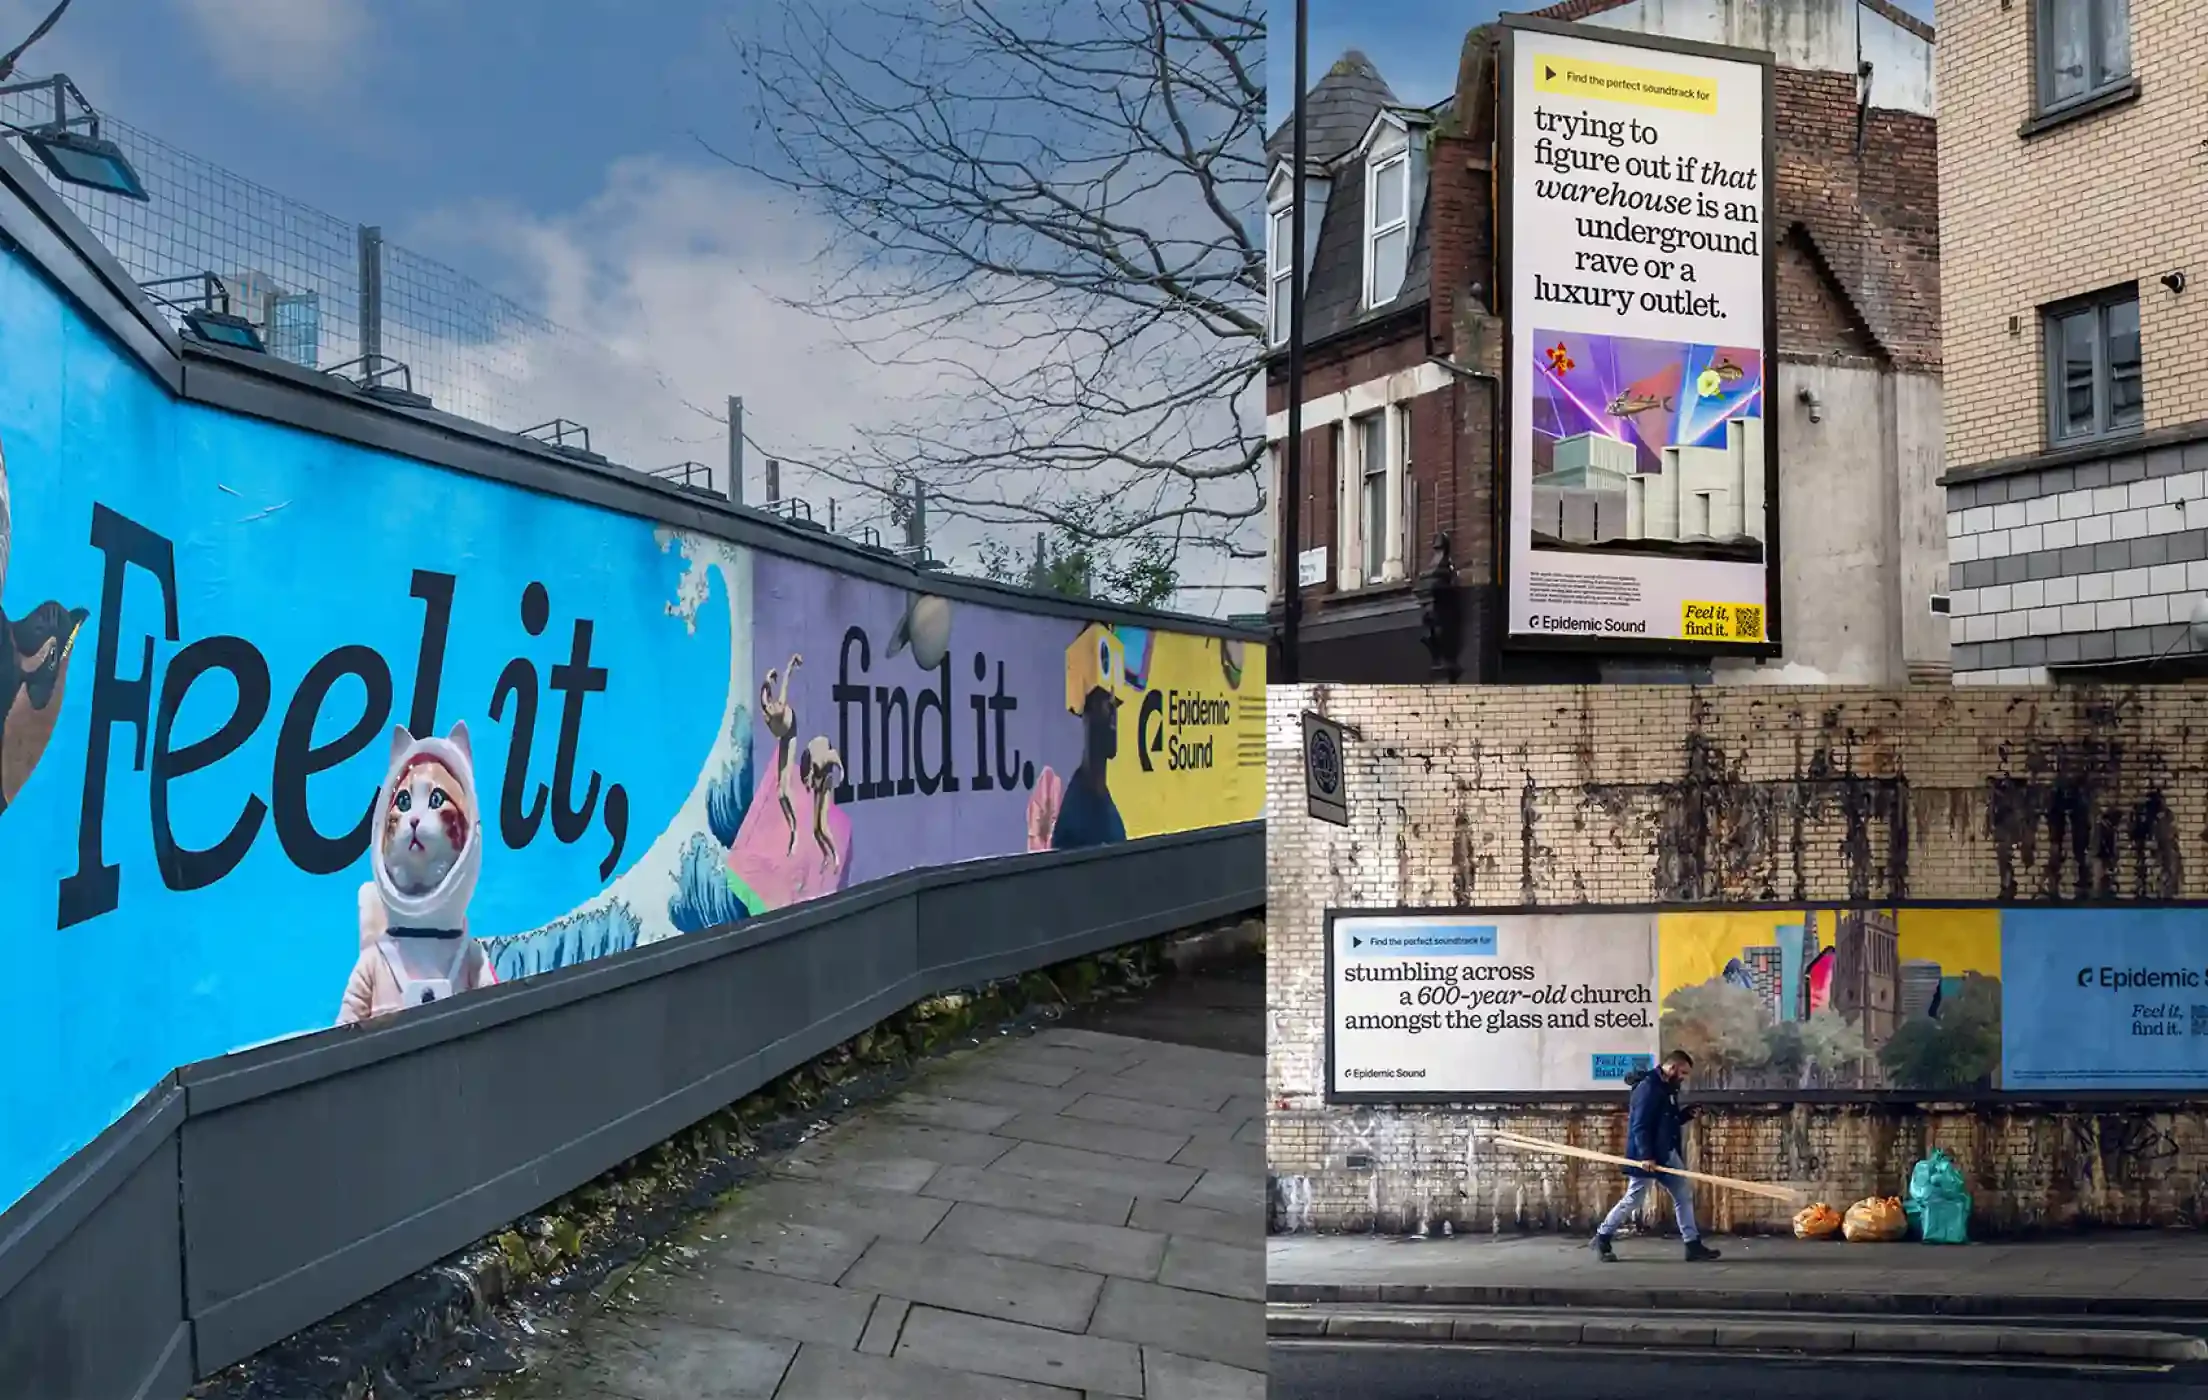 Coletânea com exemplos da campanha da marca nas ruas de Londres